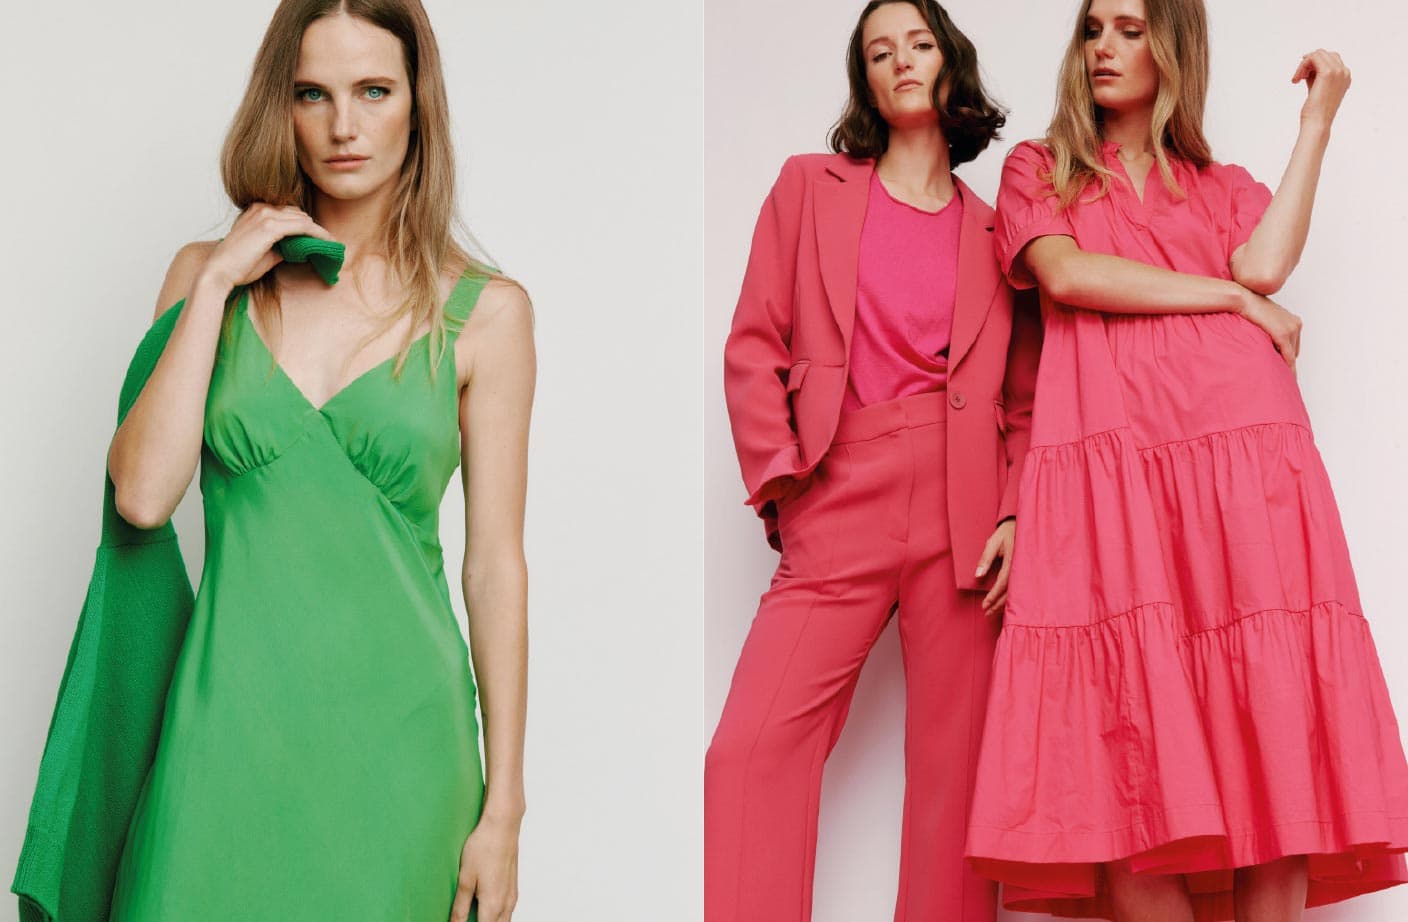 Décor meets dressing via in-vogue schemes with Resene The Range fashion colours paint